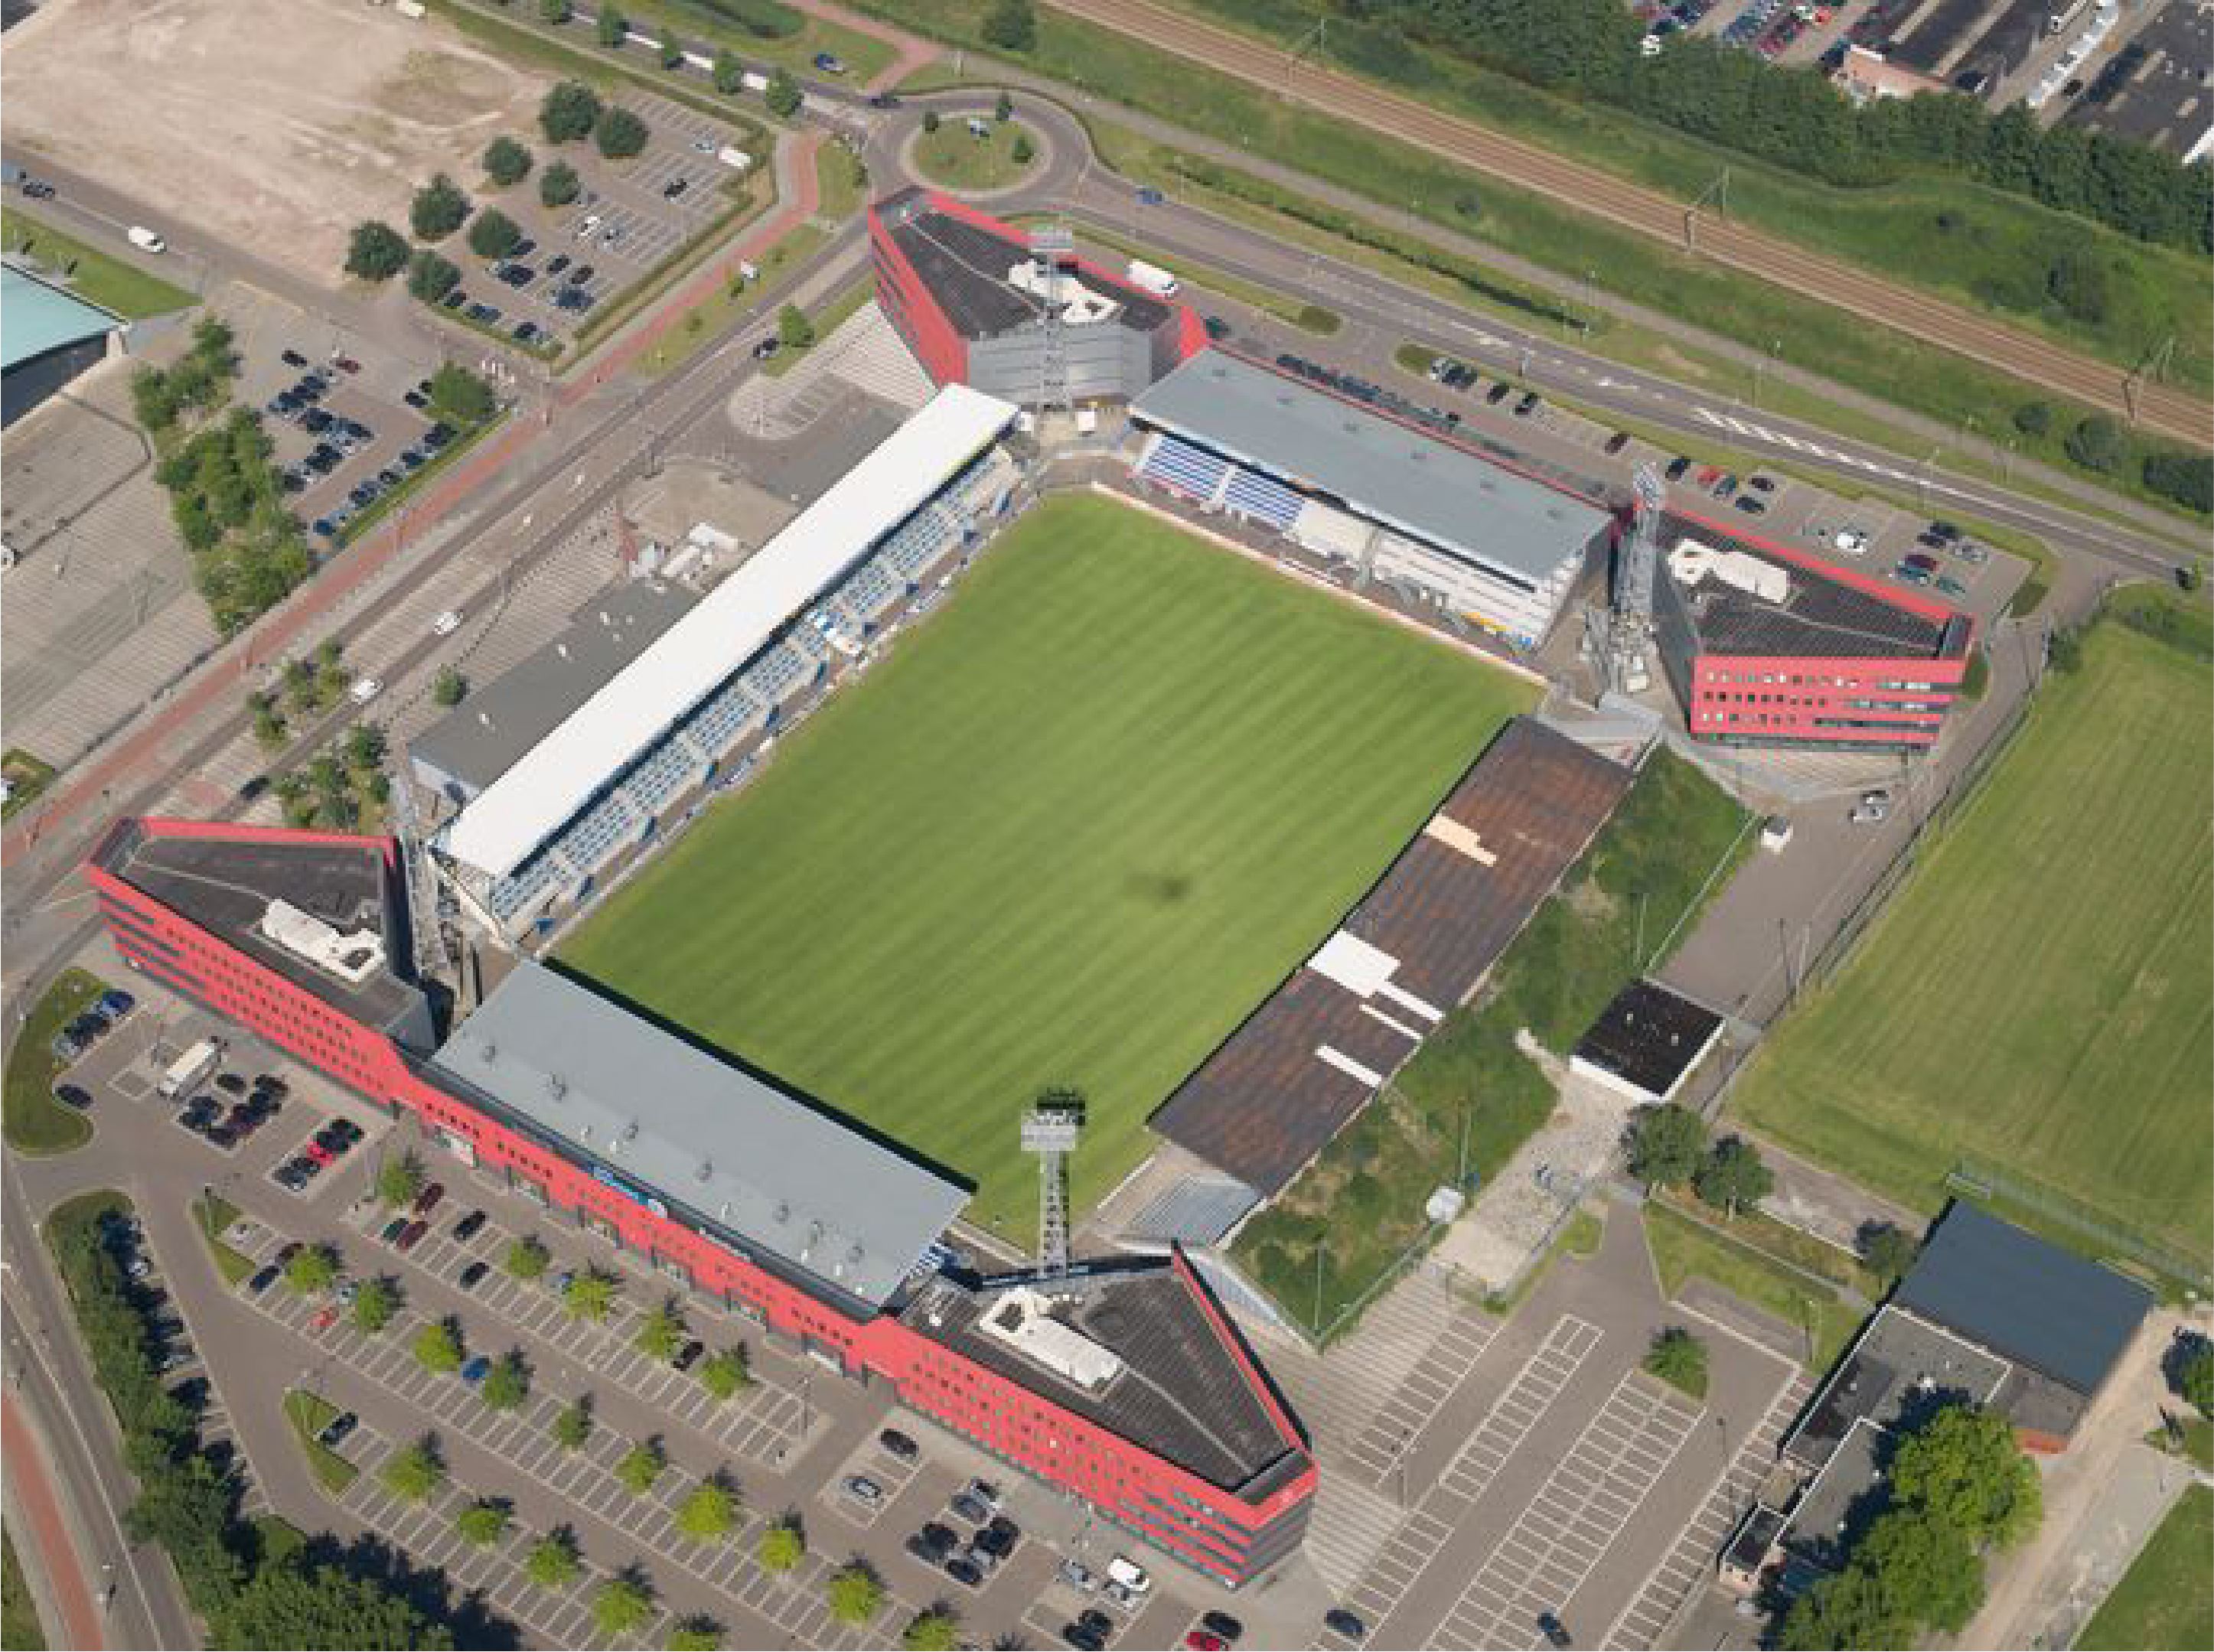 De Vliert, stadion van FC Den Bosch.